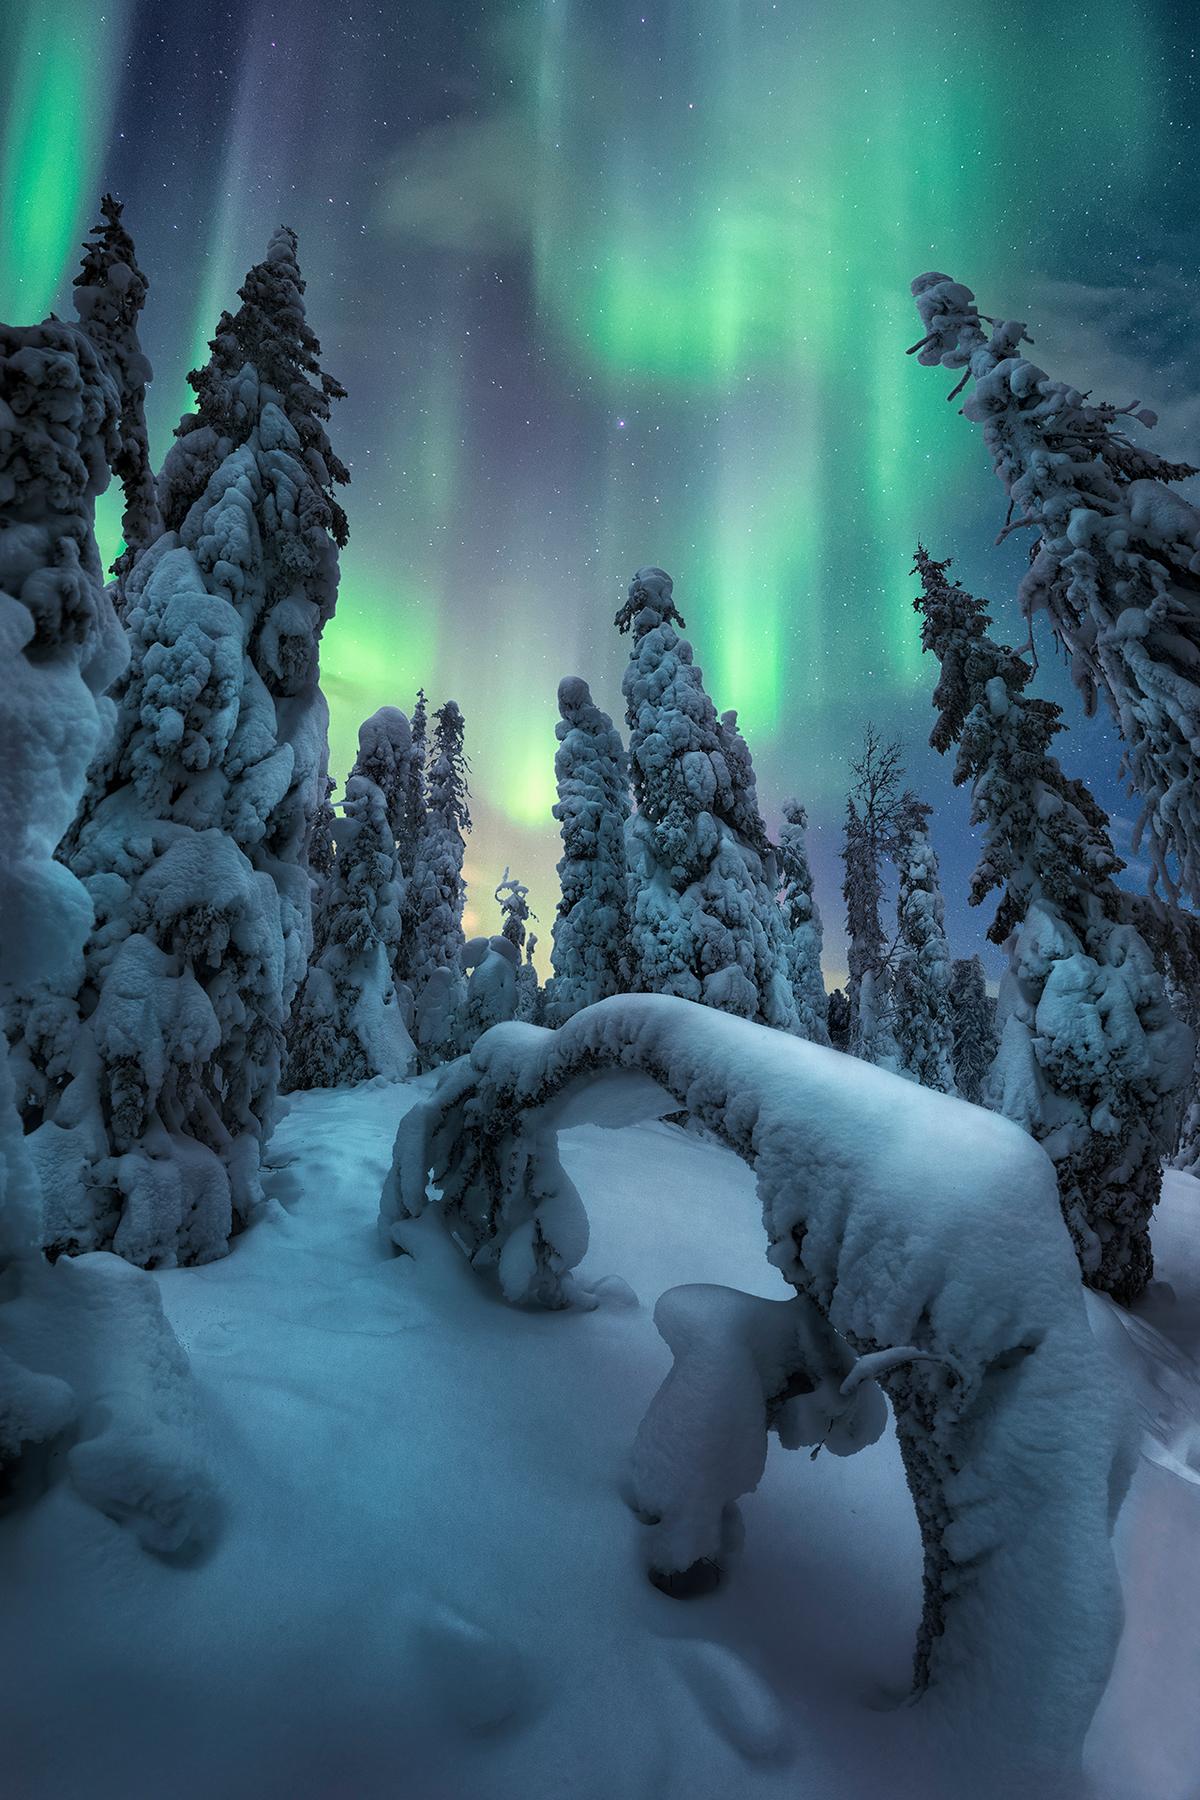 "Spirits of Winter" by Unai Larraya. (Courtesy of Unai Larraya)